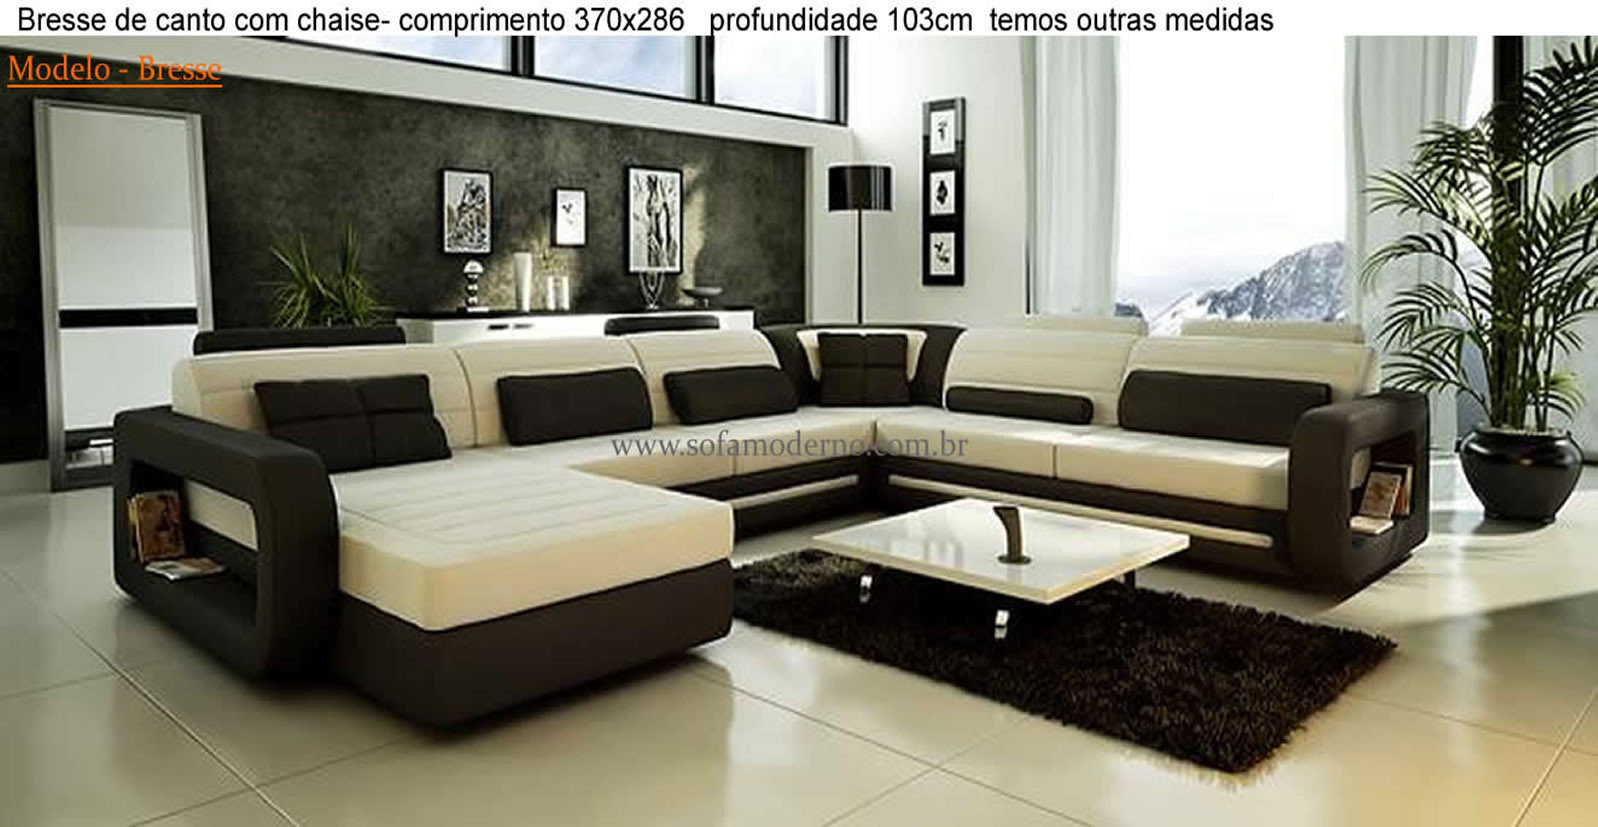 Sofá sob medida - Fabricamos estofados totalmente sob medida e sofás  planejados / sofá sobre encomenda | sofamoderno.com.br